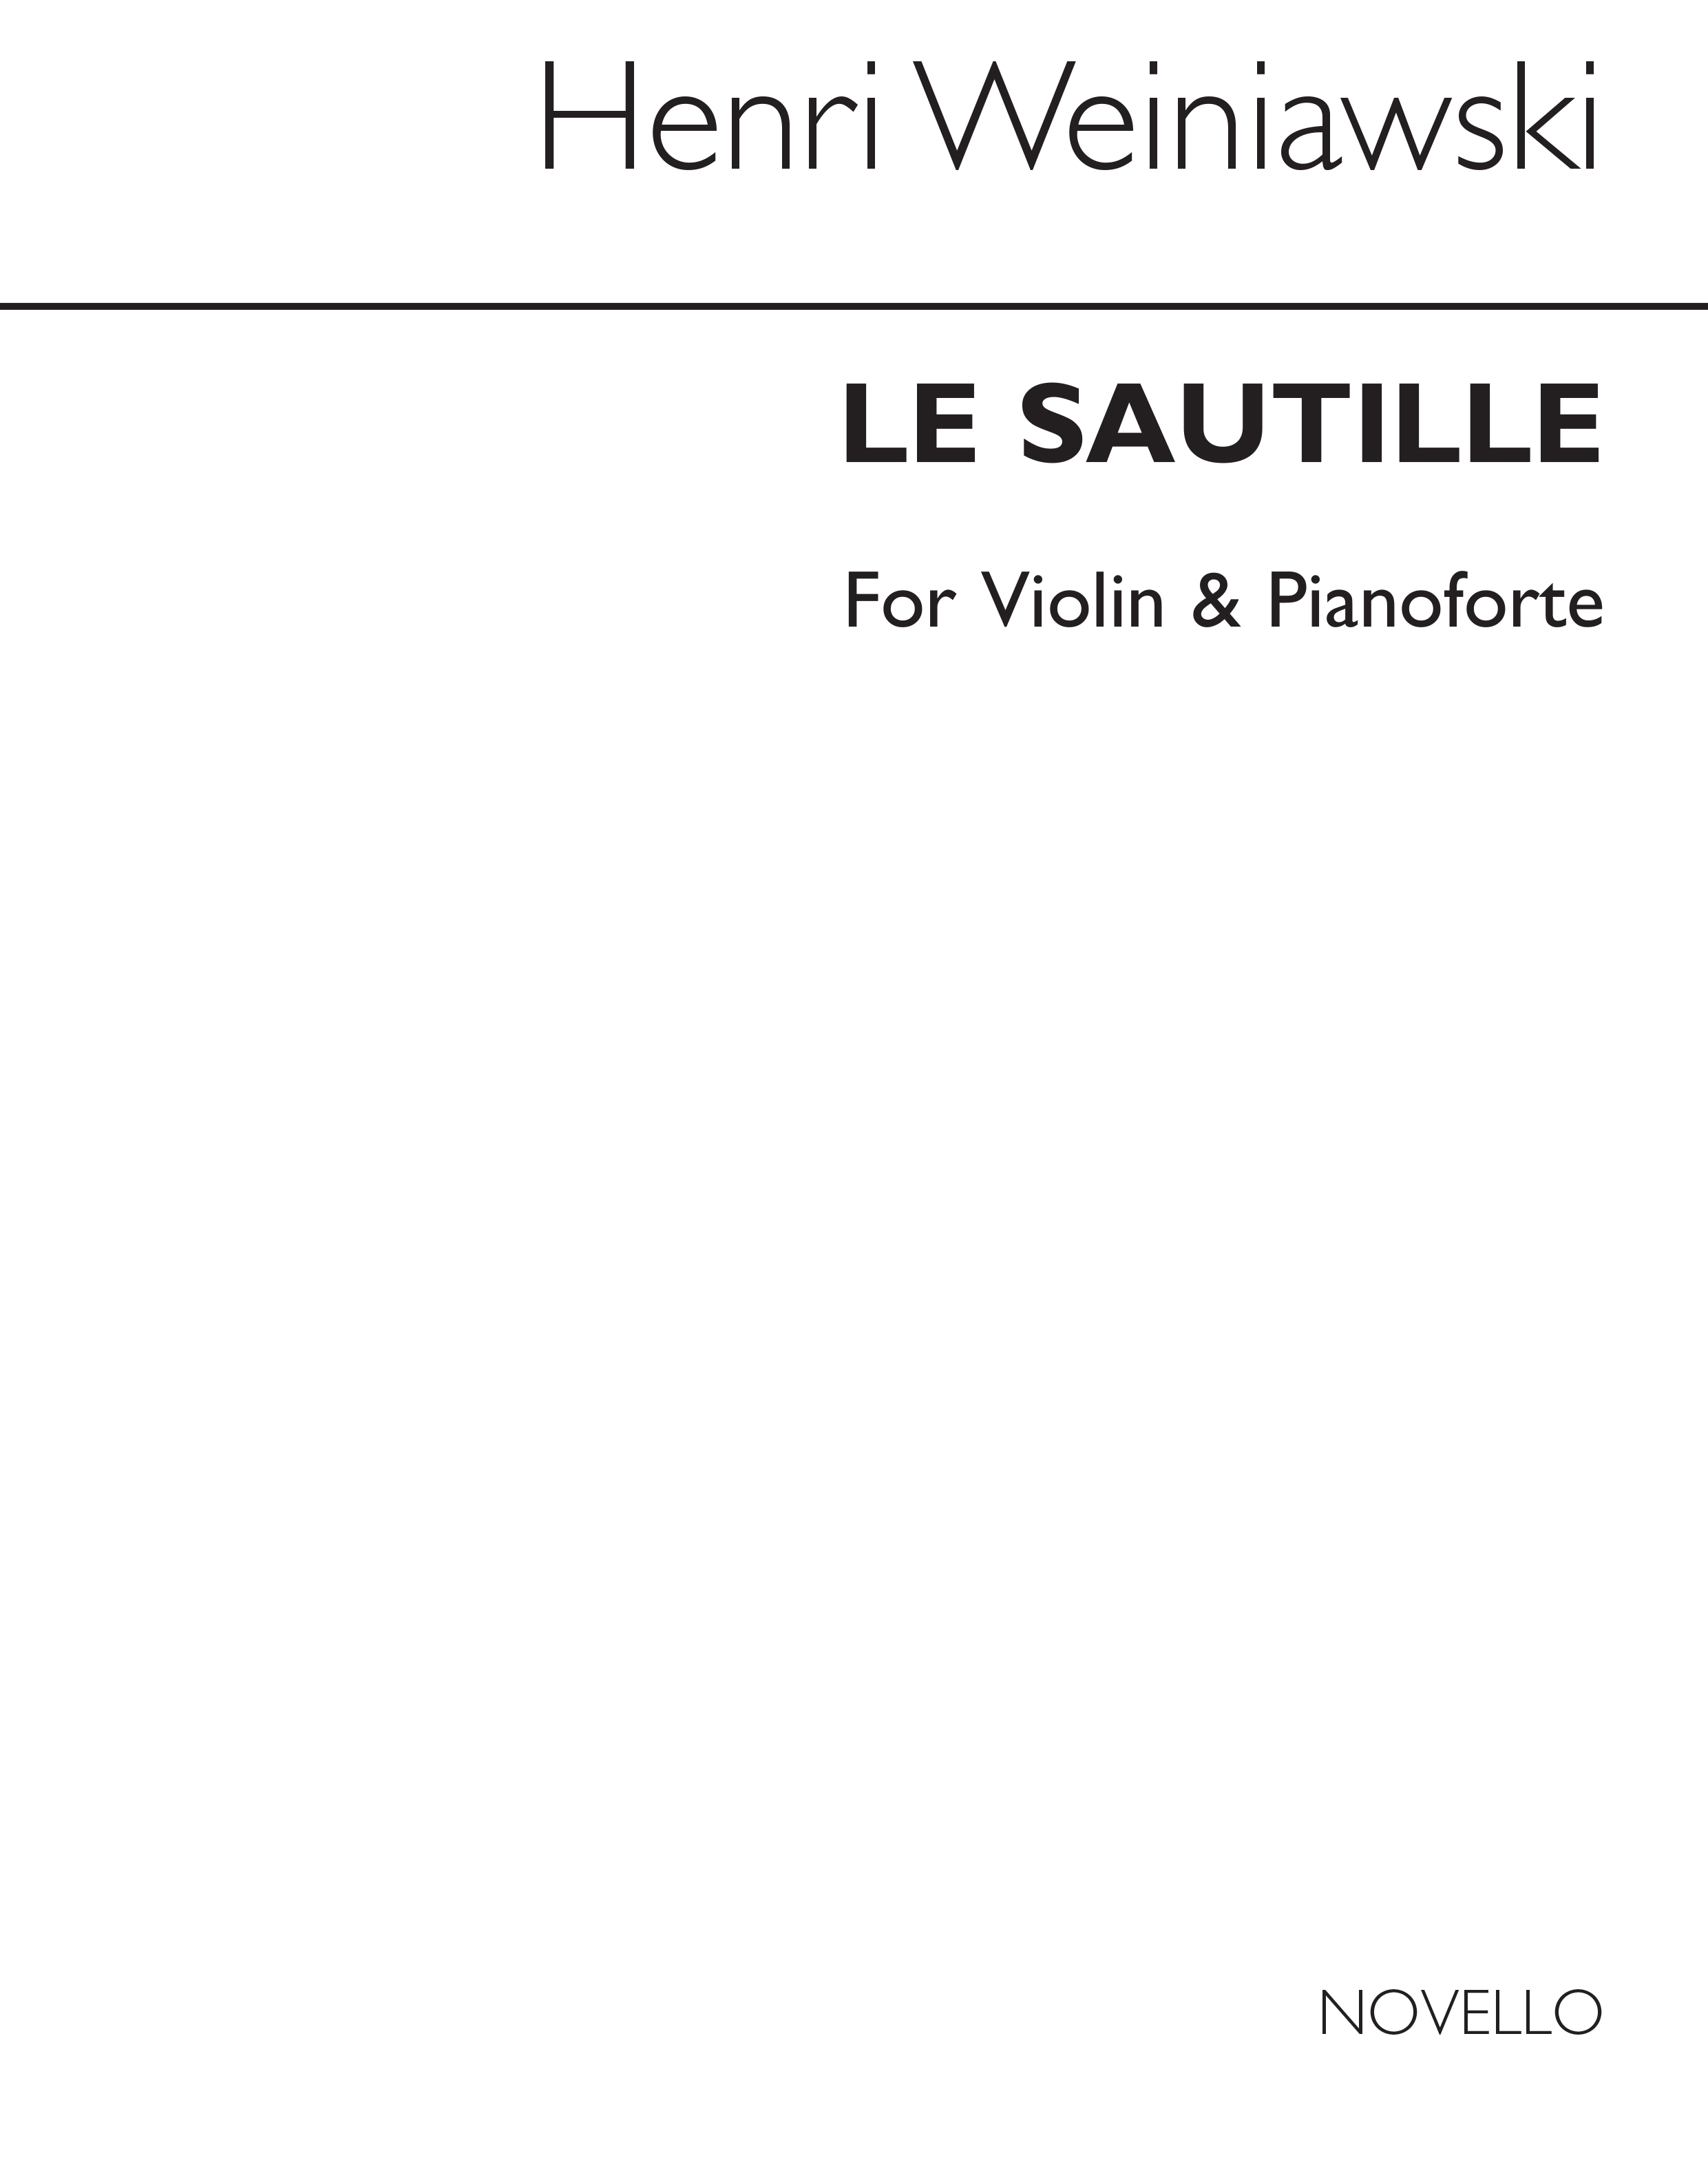 Wieniawski: Le Sautelle for Violin and Piano